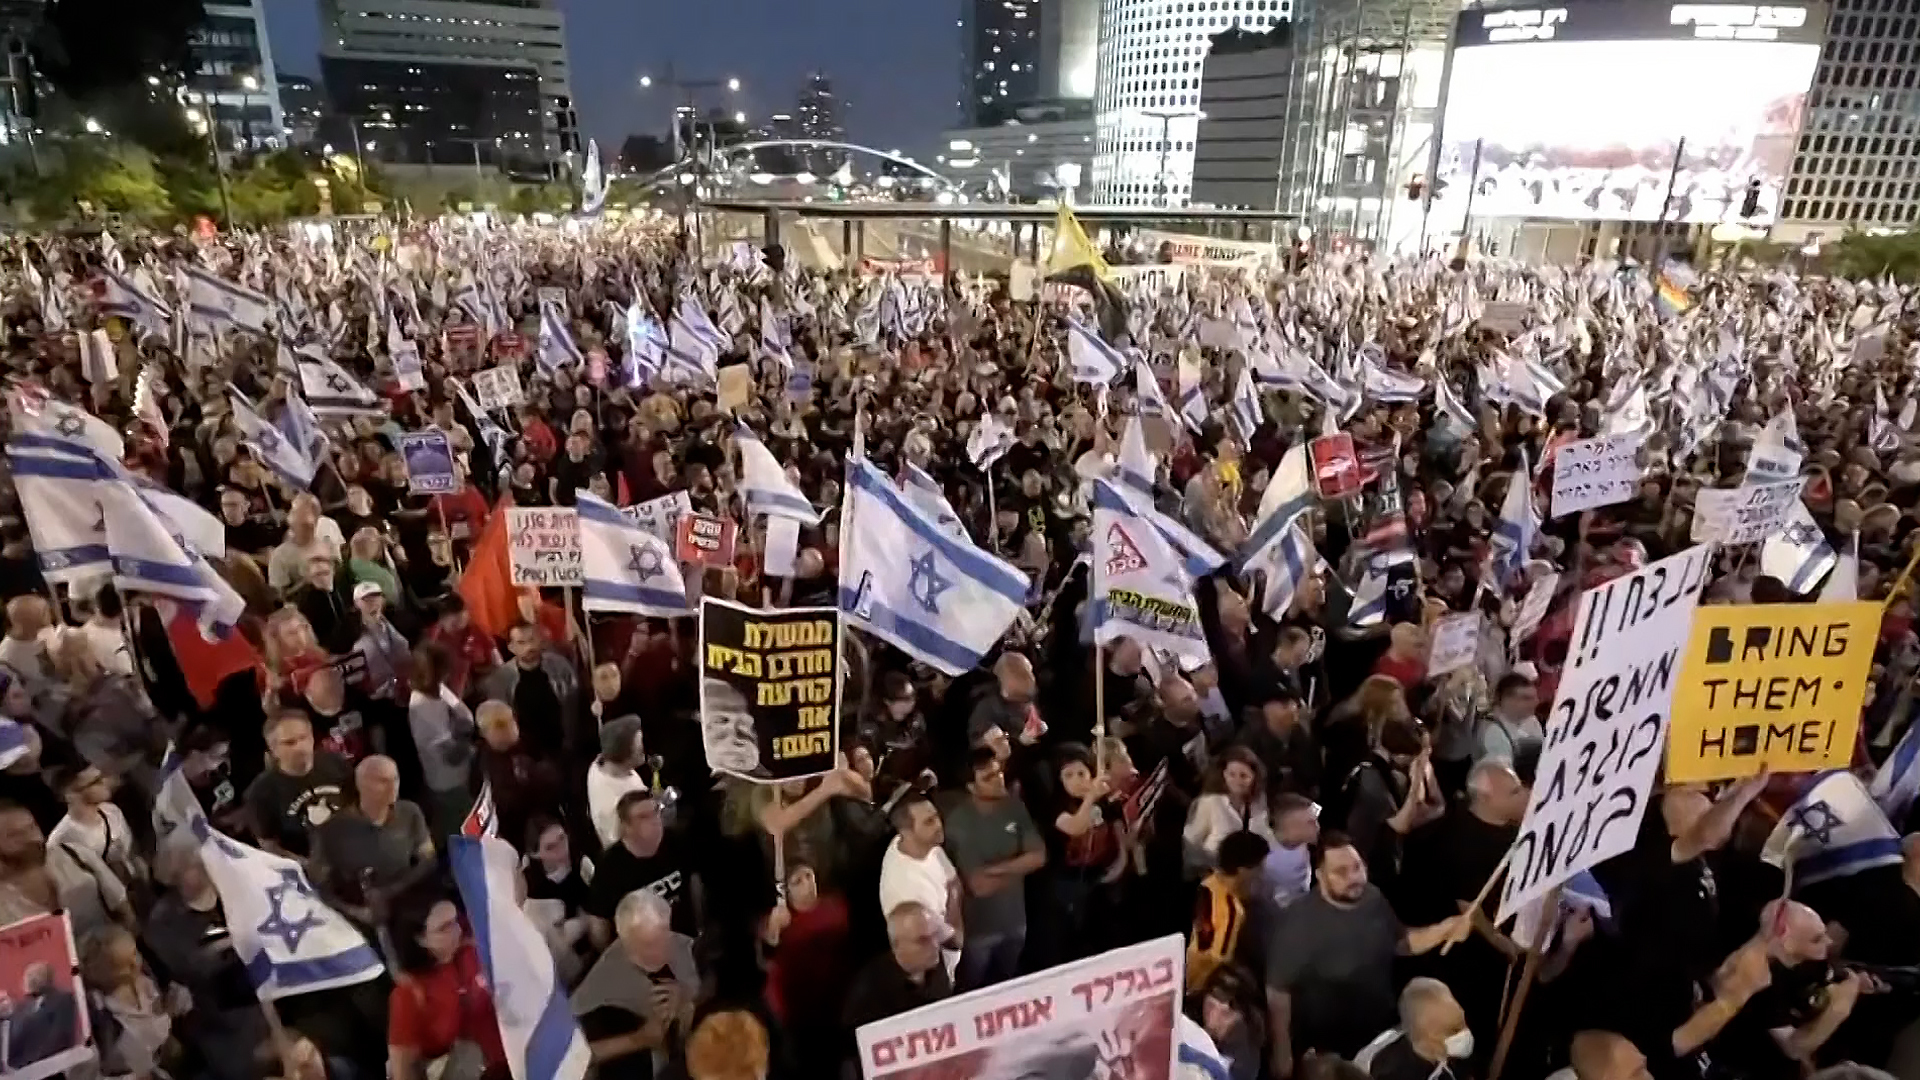 اشتباكات بين الشرطة الإسرائيلية ومحتجين في تل أبيب | التقارير الإخبارية – البوكس نيوز